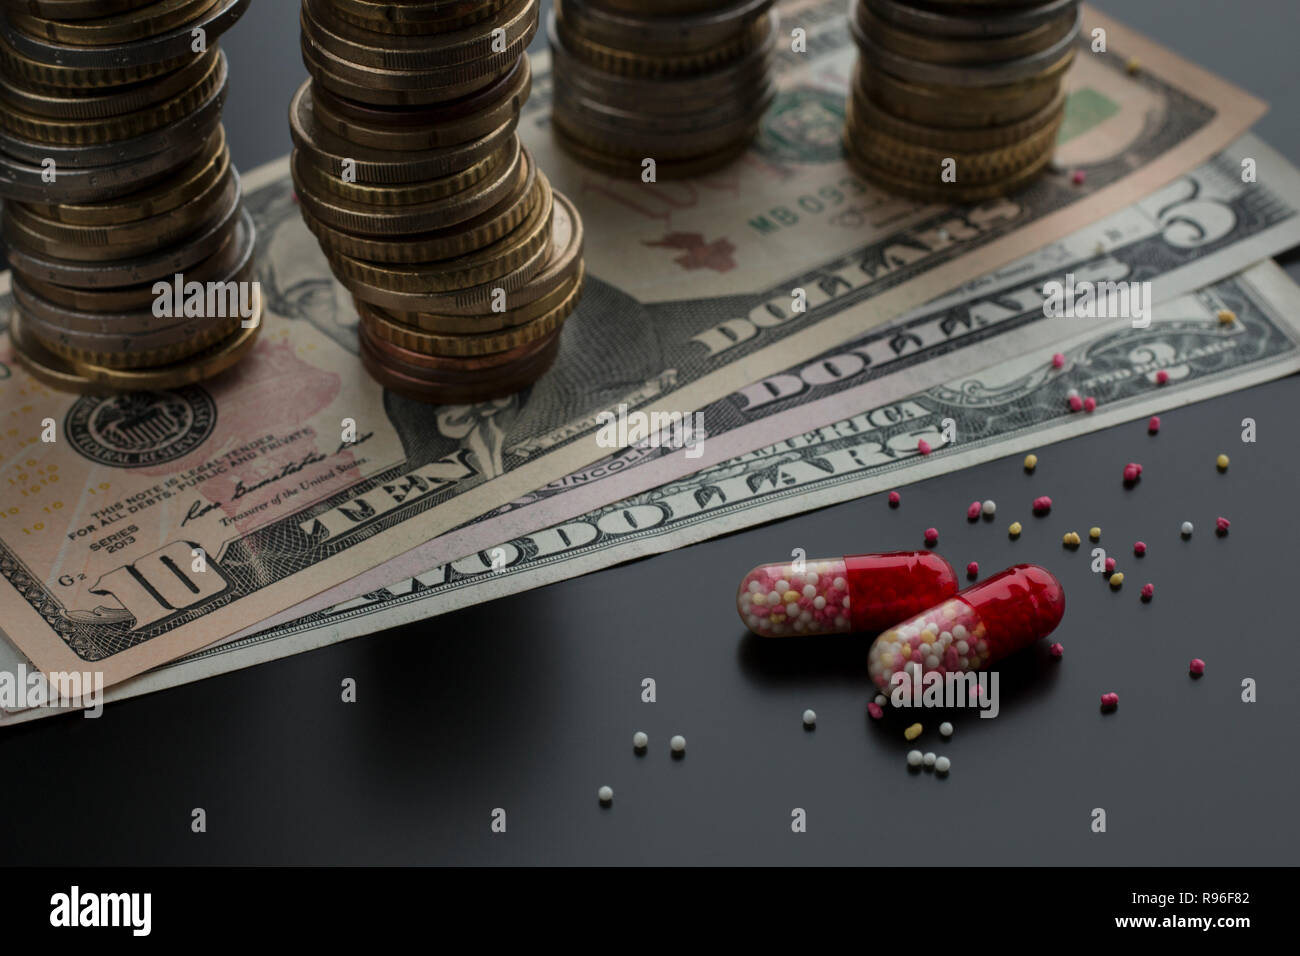 Pillole o capsule con contenuti sparsi e le fatture del dollaro, pile di monete sullo sfondo. Concetto di trattamento costoso Foto Stock